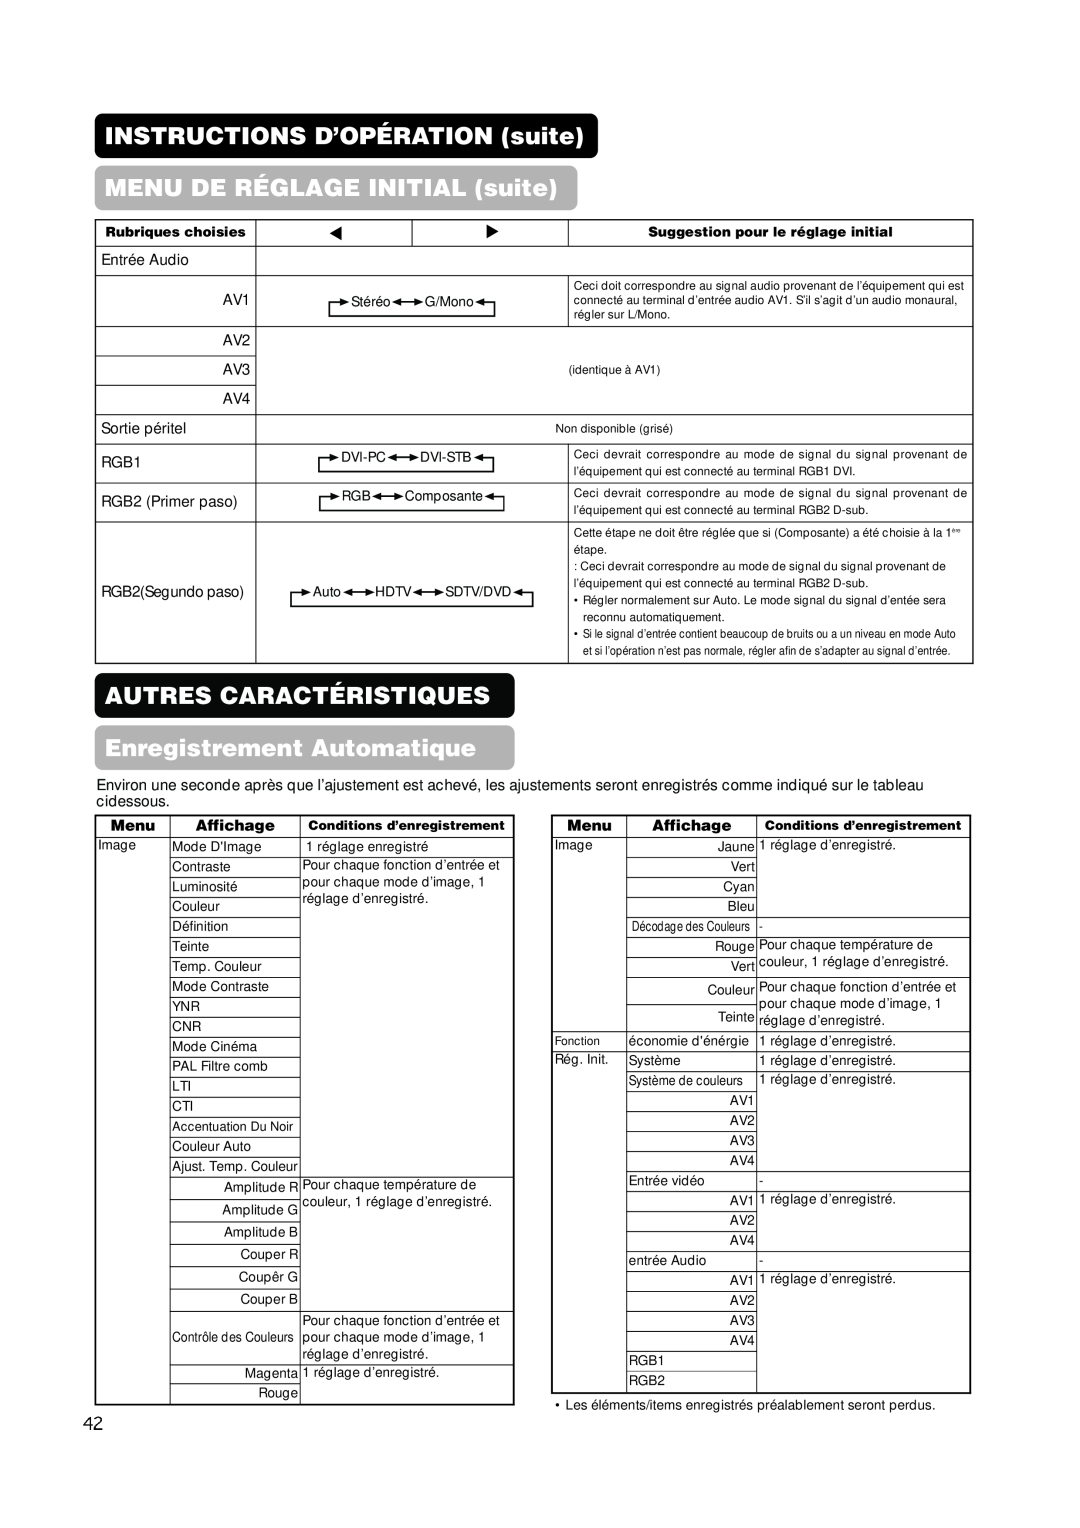 Hitachi PW1A user manual INSTRUCTIONS D’OPÉRATION suite MENU DE RÉGLAGE INITIAL suite, Menu, Affichage, Rubriques choisies 